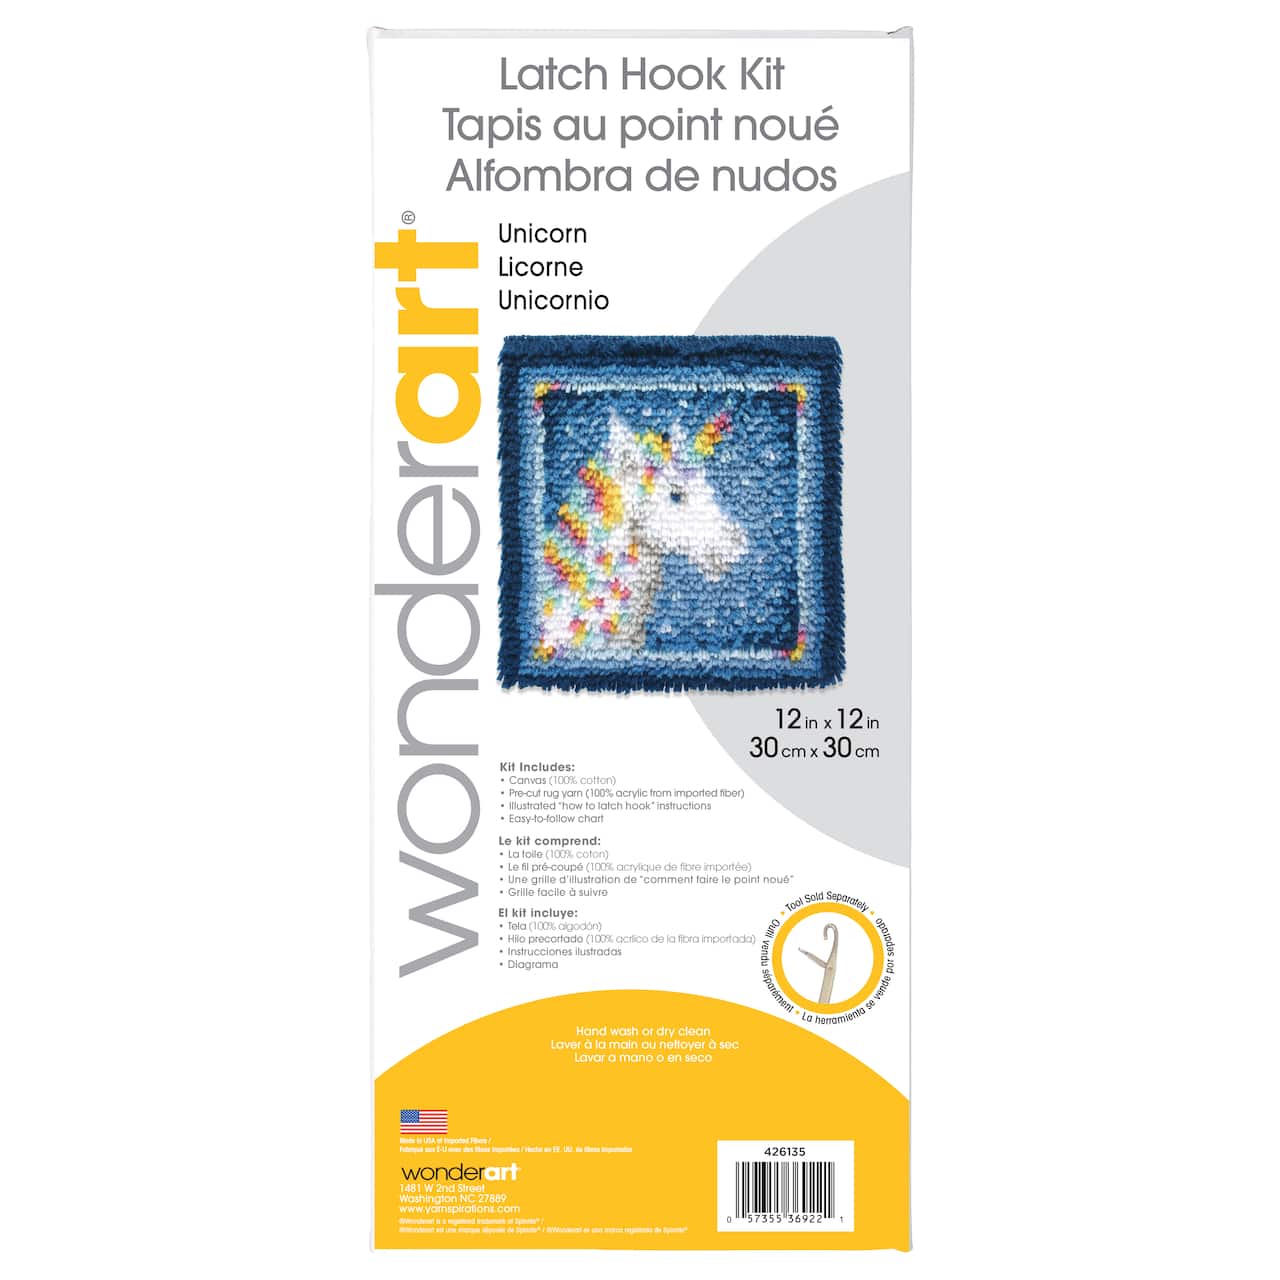 WonderArt&#xAE; Unicorn Latch Hook Kit